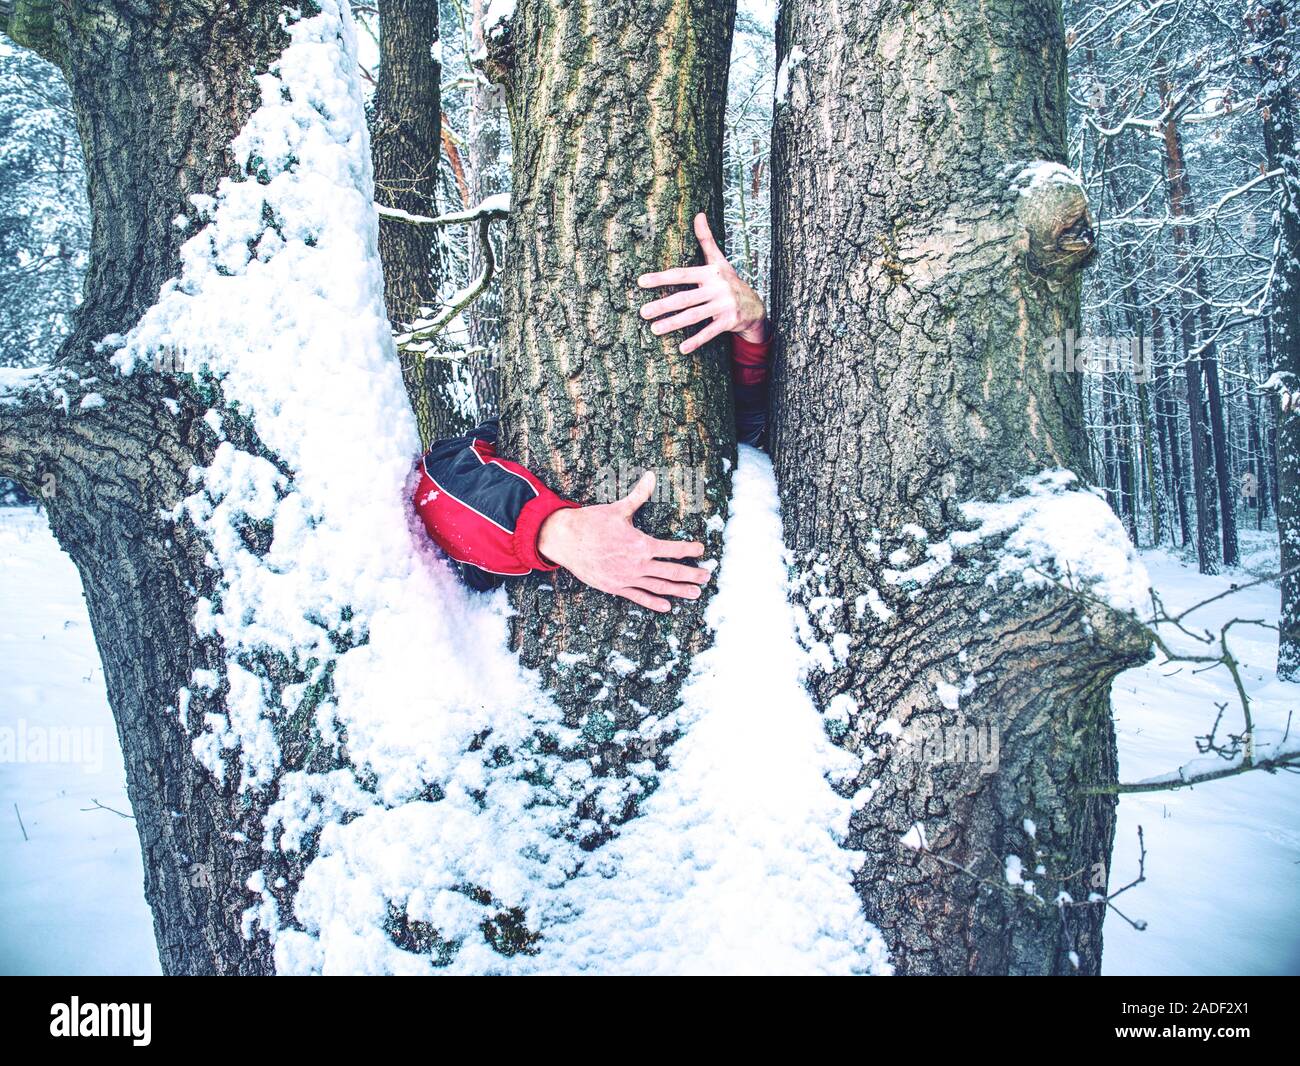 L'homme est titulaire tronc de l'arbre à l'écorce gelée recouverte de neige collante fraîche. Promenade en forêt d'hiver. Banque D'Images